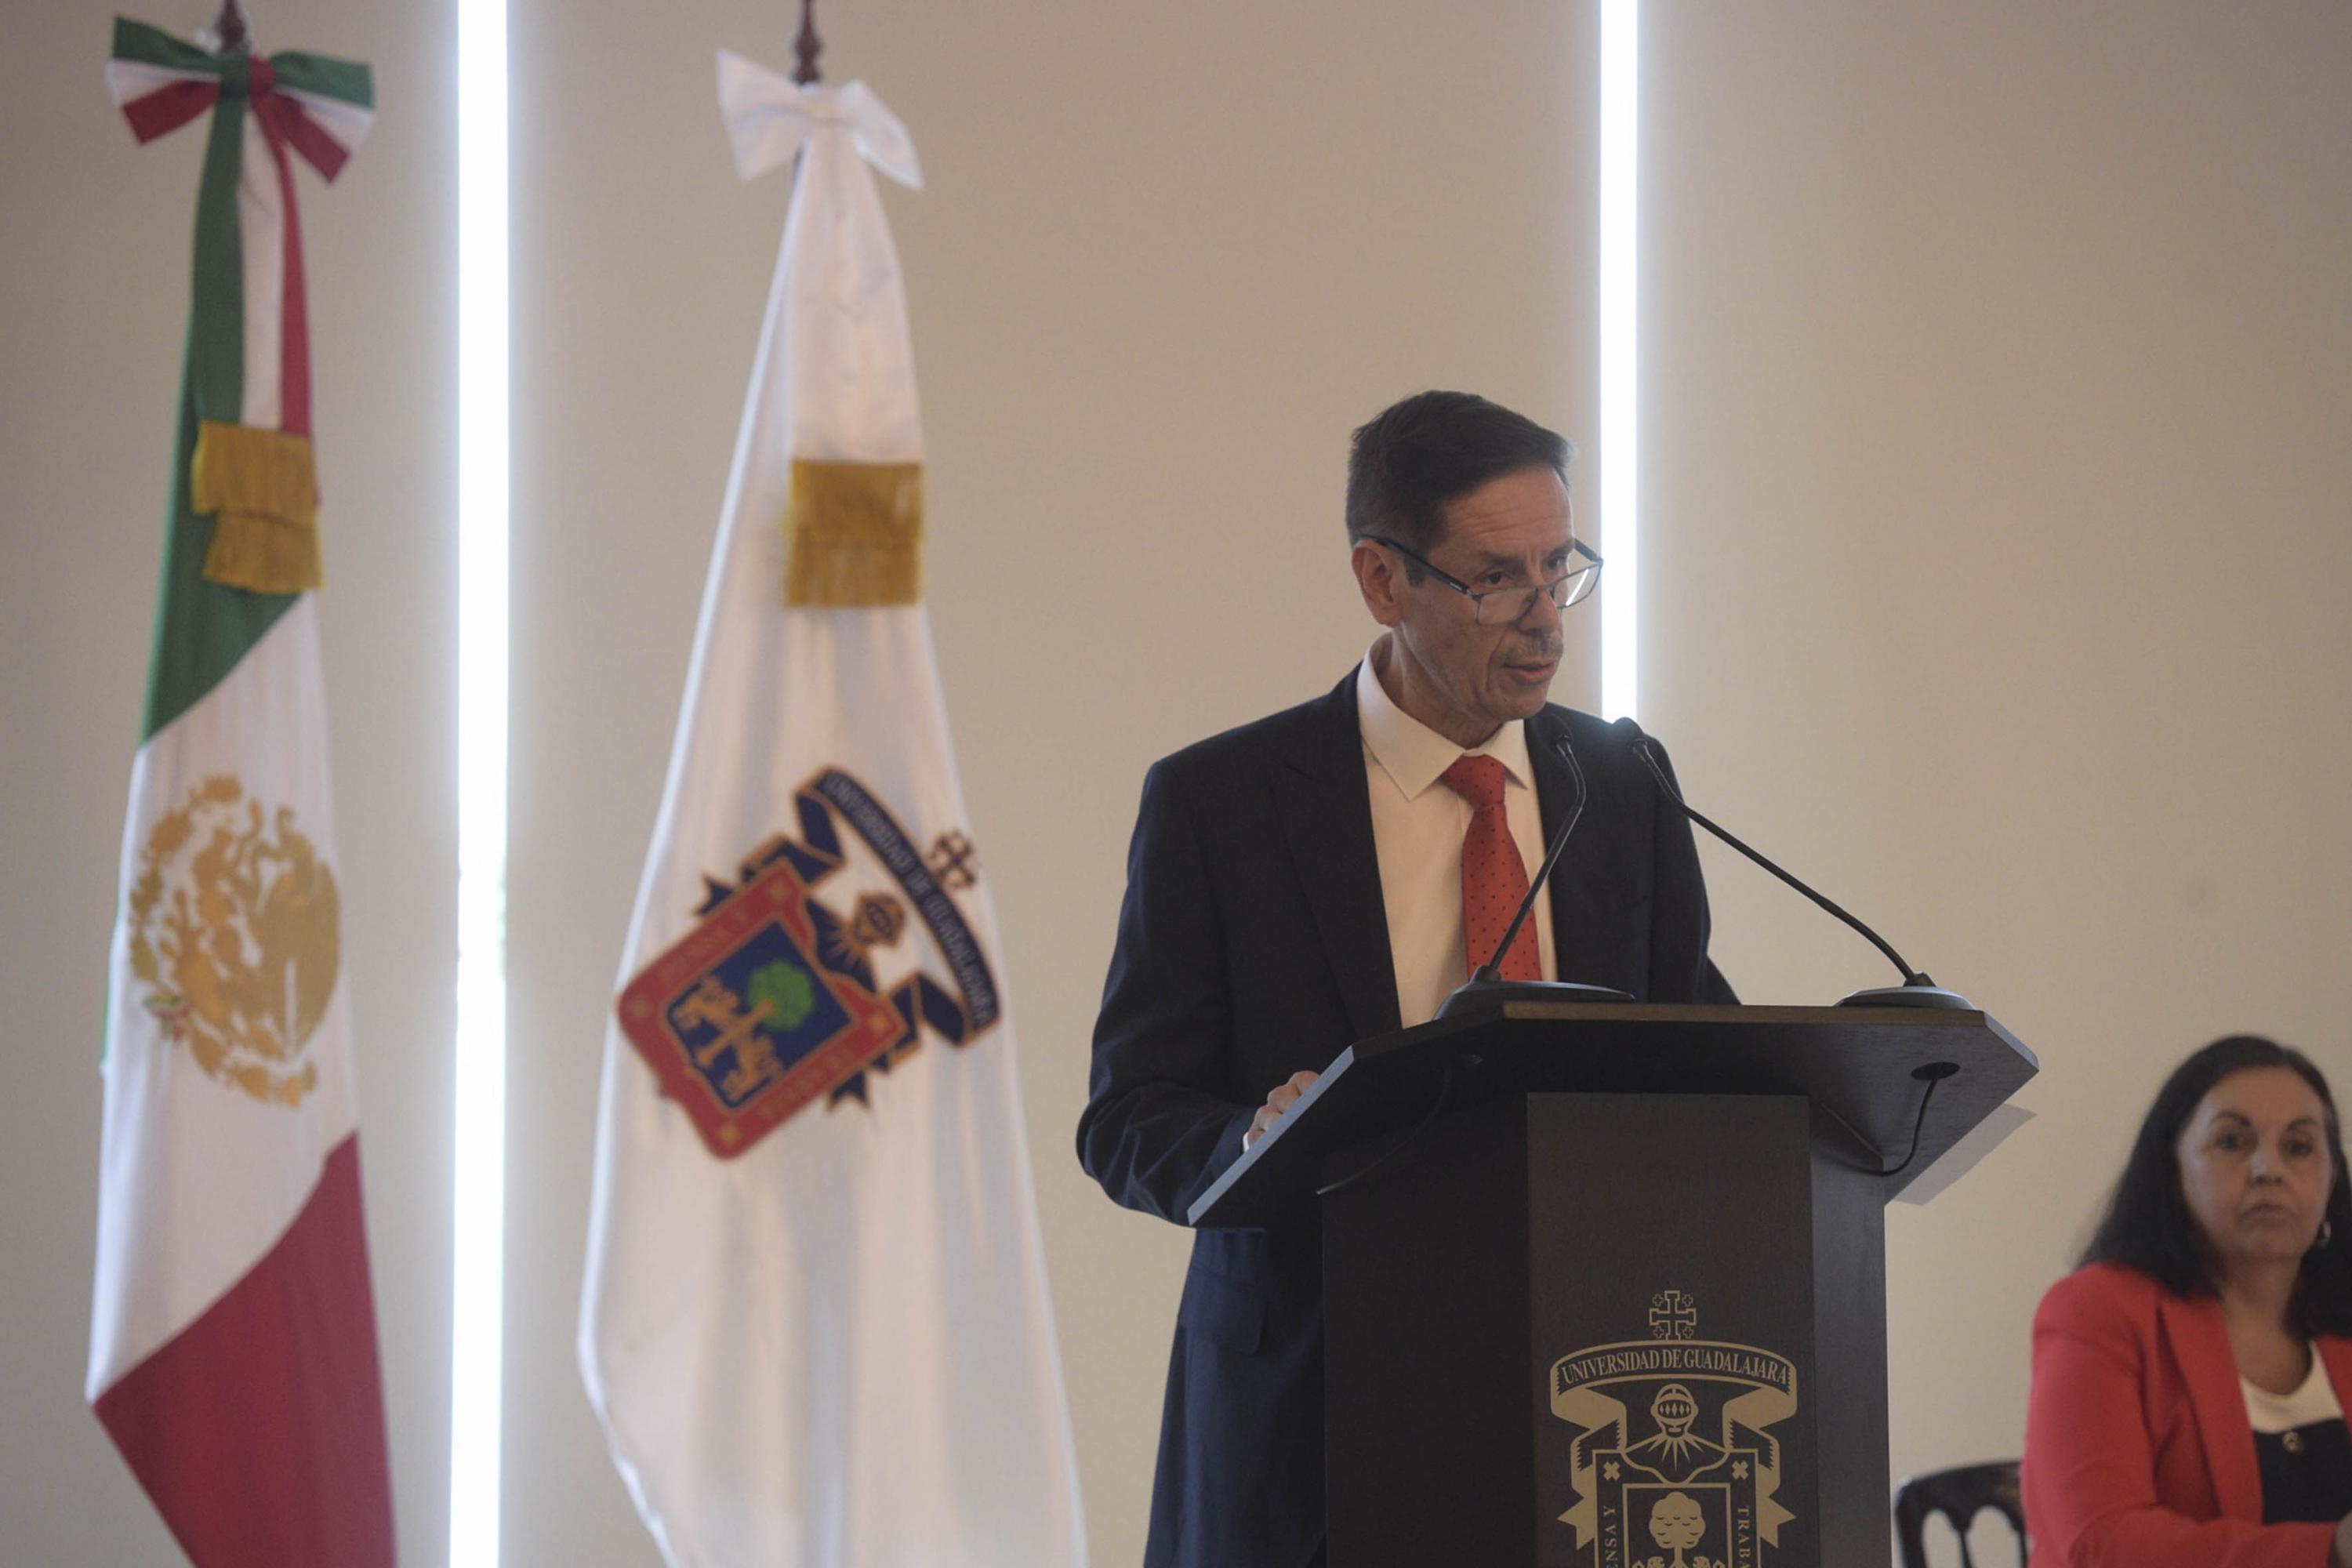 Rector del Centro Universitario de Arte, Arquitectura y Diseño (CUAAD), doctor Francisco Javier González Madariaga, desde el podio haciendo uso de la voz